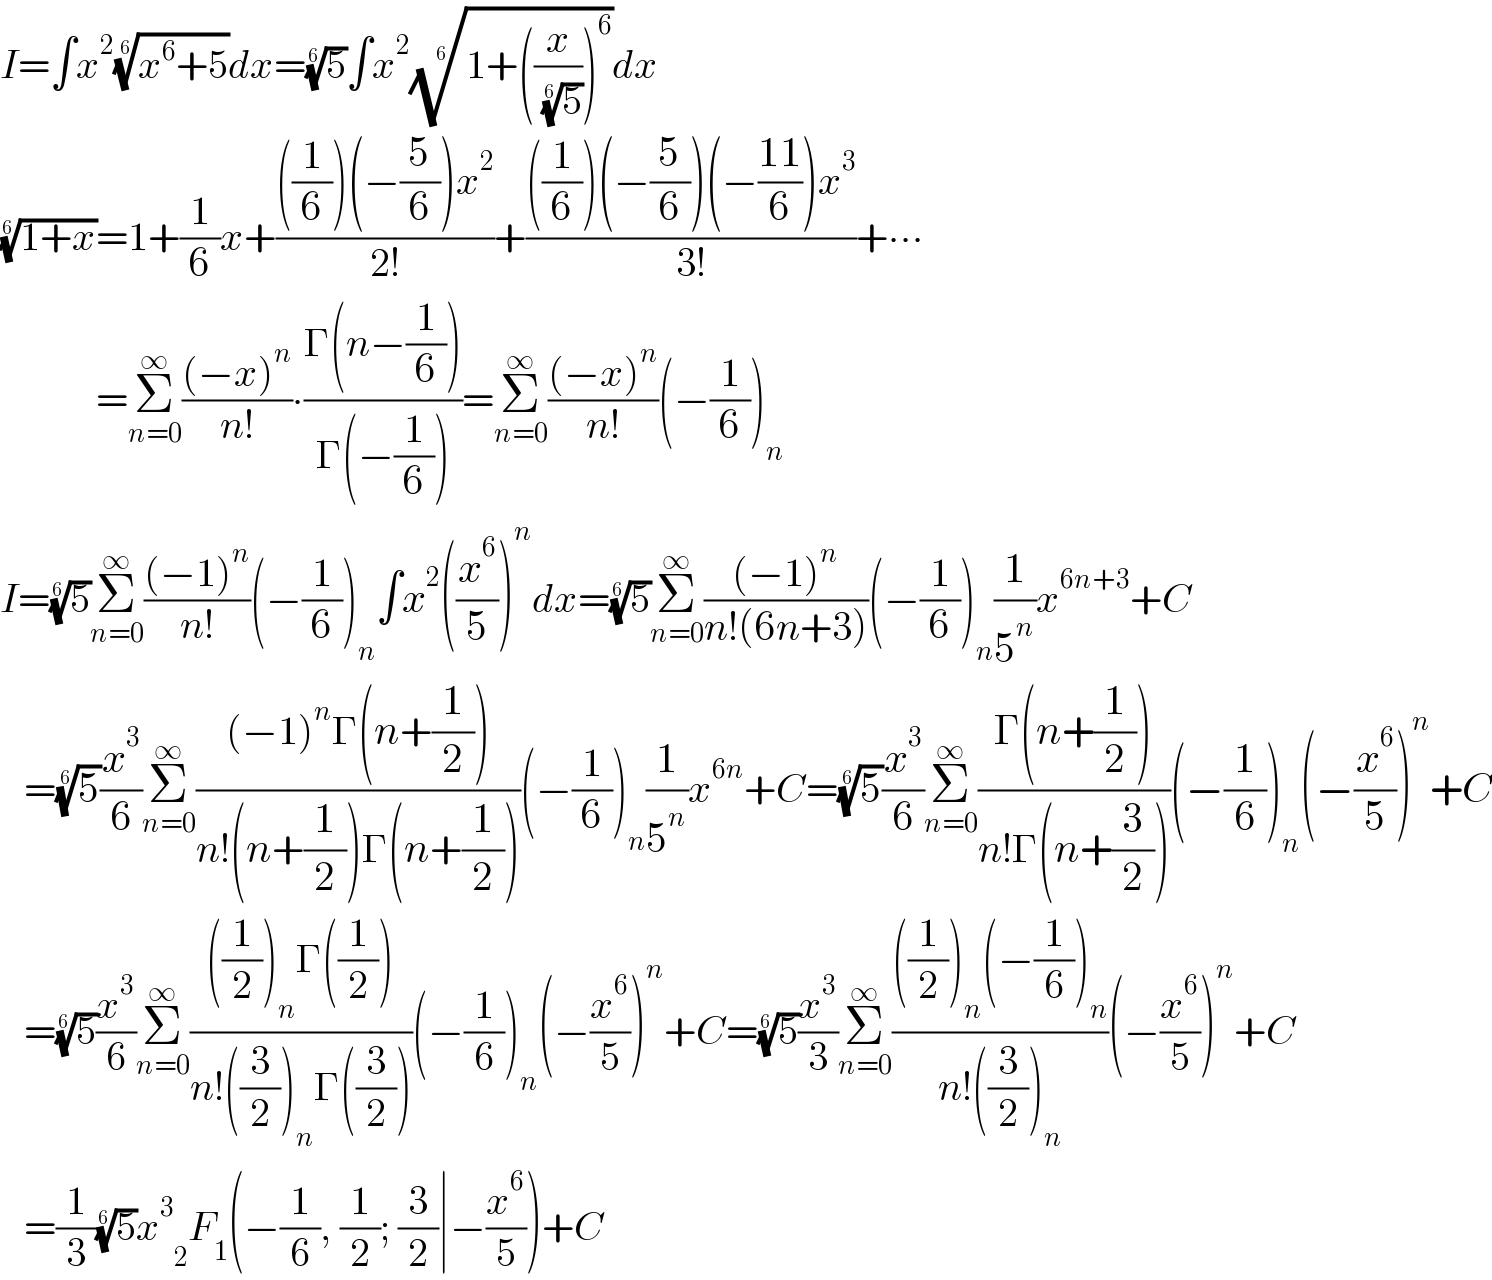 I=∫x^2 ((x^6 +5))^(1/6) dx=(5)^(1/6) ∫x^2 ((1+((x/( (5)^(1/6) )))^6 ))^(1/6) dx  ((1+x))^(1/6) =1+(1/6)x+((((1/6))(−(5/6))x^2 )/(2!))+((((1/6))(−(5/6))(−((11)/6))x^3 )/(3!))+∙∙∙              =Σ_(n=0) ^∞ (((−x)^n )/(n!))∙((Γ(n−(1/6)))/(Γ(−(1/6))))=Σ_(n=0) ^∞ (((−x)^n )/(n!))(−(1/6))_n   I=(5)^(1/6) Σ_(n=0) ^∞ (((−1)^n )/(n!))(−(1/6))_n ∫x^2 ((x^6 /5))^n dx=(5)^(1/6) Σ_(n=0) ^∞ (((−1)^n )/(n!(6n+3)))(−(1/6))_n (1/5^n )x^(6n+3) +C     =(5)^(1/6) (x^3 /6)Σ_(n=0) ^∞ (((−1)^n Γ(n+(1/2)))/(n!(n+(1/2))Γ(n+(1/2))))(−(1/6))_n (1/5^n )x^(6n) +C=(5)^(1/6) (x^3 /6)Σ_(n=0) ^∞ ((Γ(n+(1/2)))/(n!Γ(n+(3/2))))(−(1/6))_n (−(x^6 /5))^n +C     =(5)^(1/6) (x^3 /6)Σ_(n=0) ^∞ ((((1/2))_n Γ((1/2)))/(n!((3/2))_n Γ((3/2))))(−(1/6))_n (−(x^6 /5))^n +C=(5)^(1/6) (x^3 /3)Σ_(n=0) ^∞ ((((1/2))_n (−(1/6))_n )/(n!((3/2))_n ))(−(x^6 /5))^n +C     =(1/3)(5)^(1/6) x^3  _2 F_1 (−(1/6), (1/2); (3/2)∣−(x^6 /5))+C  